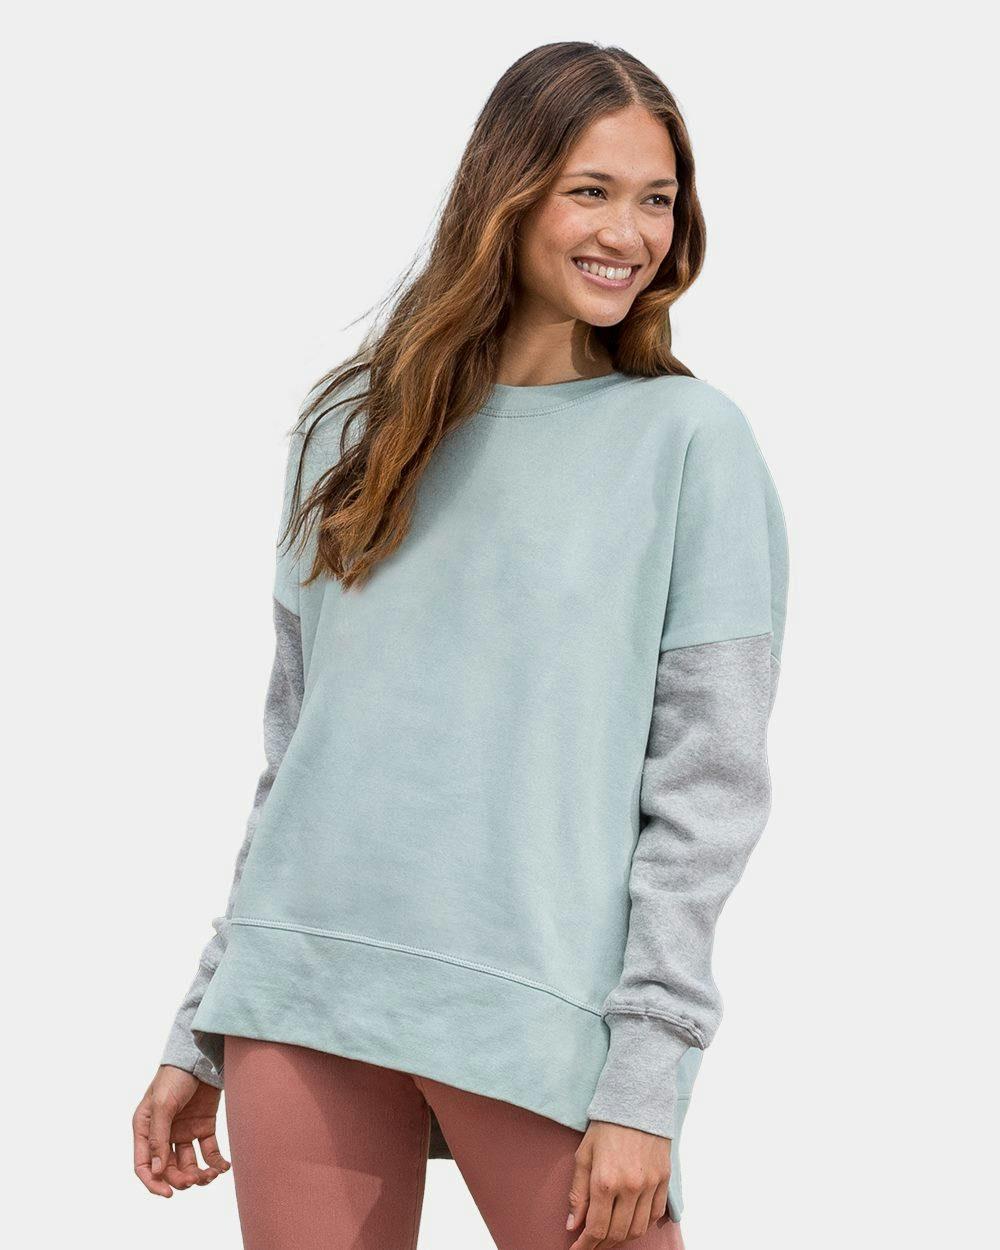 Image for Women's Cloud Fleece Colorblocked Crewneck Sweatshirt - W21143